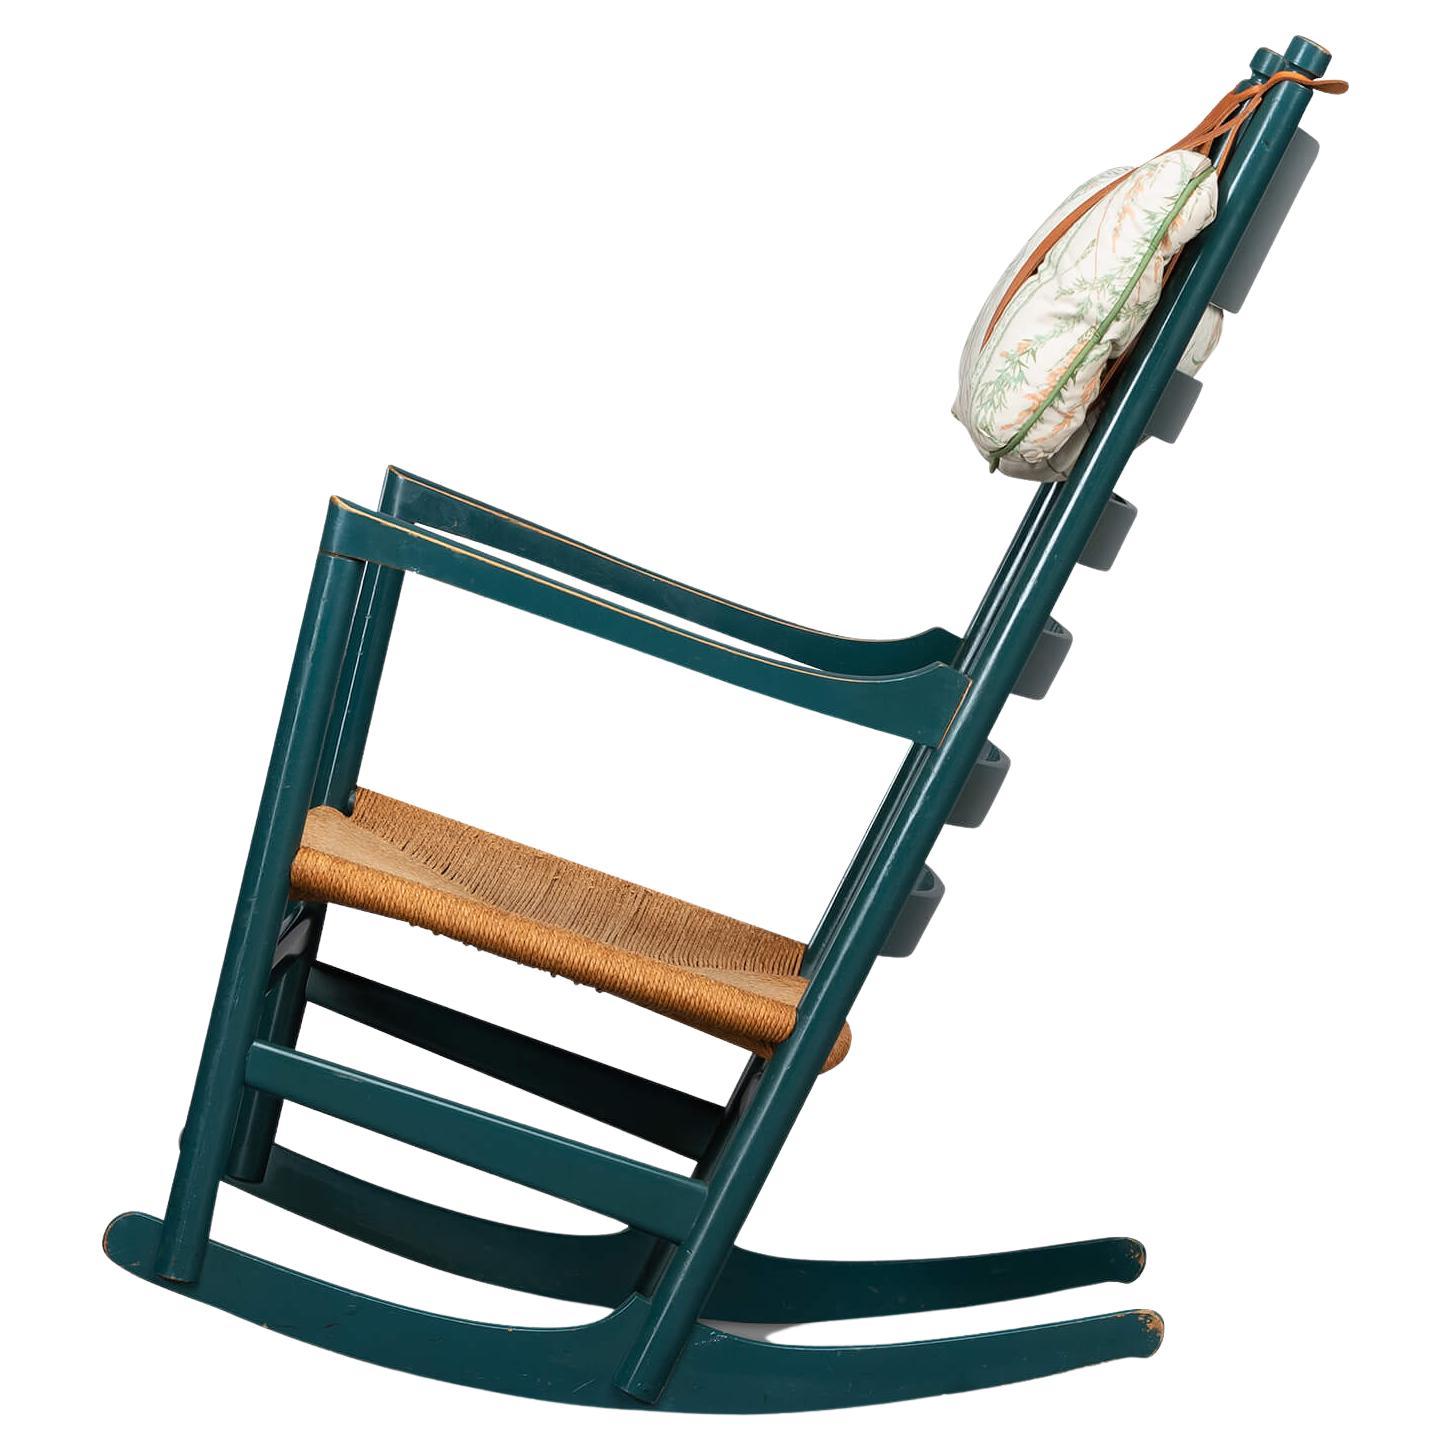 Rocking Chair #45 von Hans J. Wegner für Tarm Stole & Mobelfabrik, 1960er Jahre